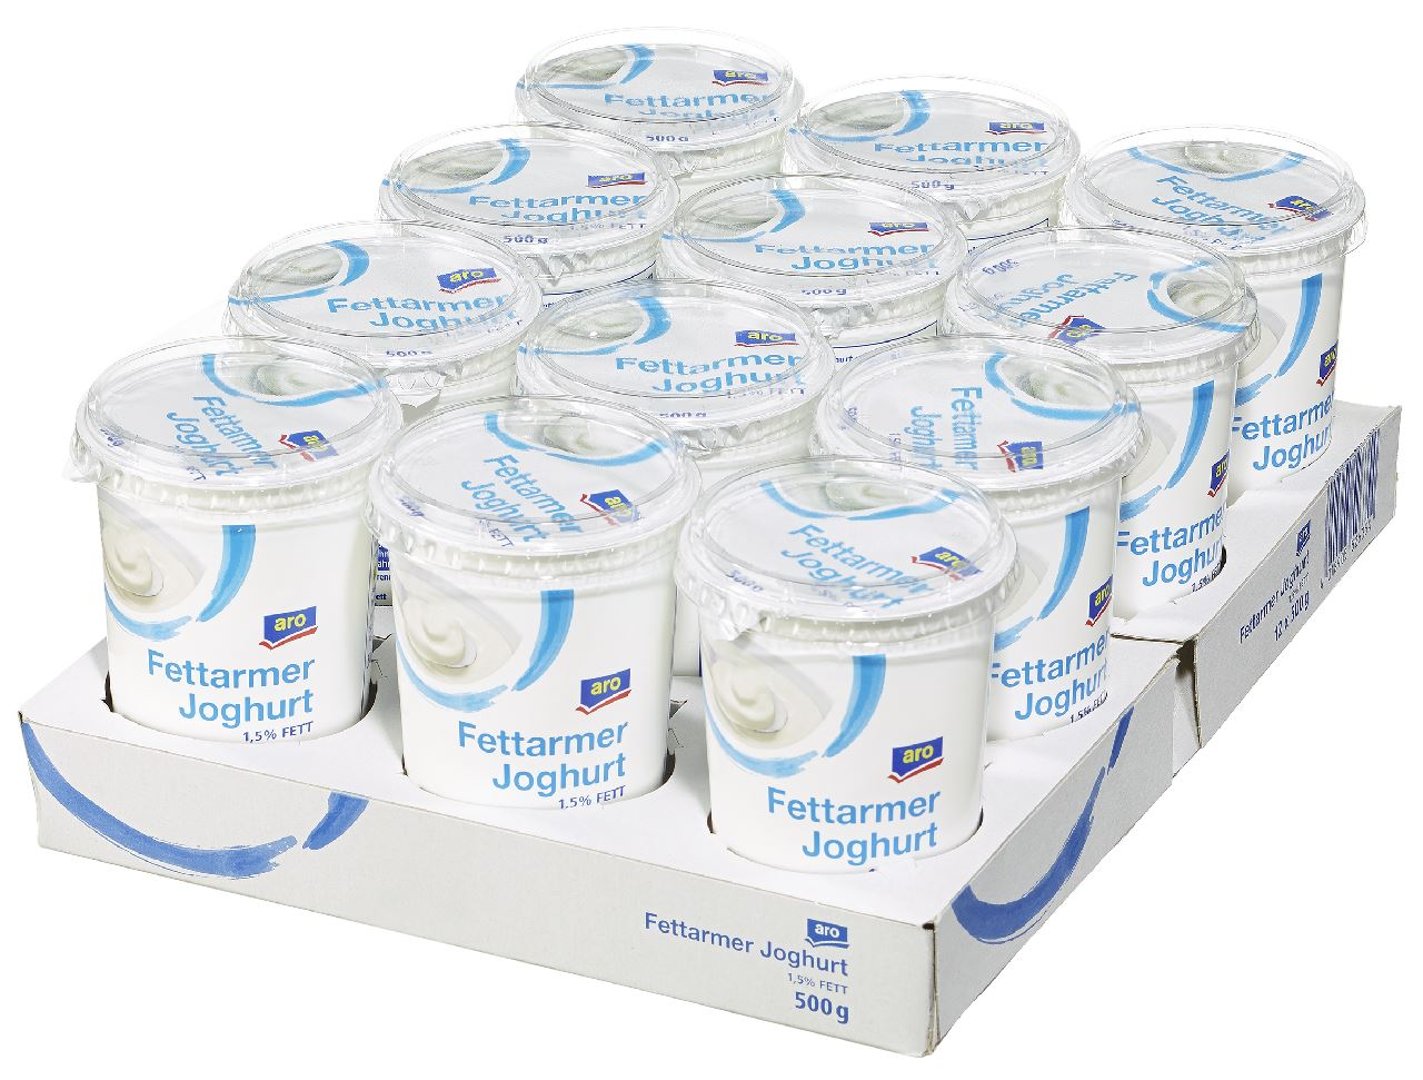 aro - Joghurt 1,5 % Fett im Milchanteil - 12 x 500 g Karton